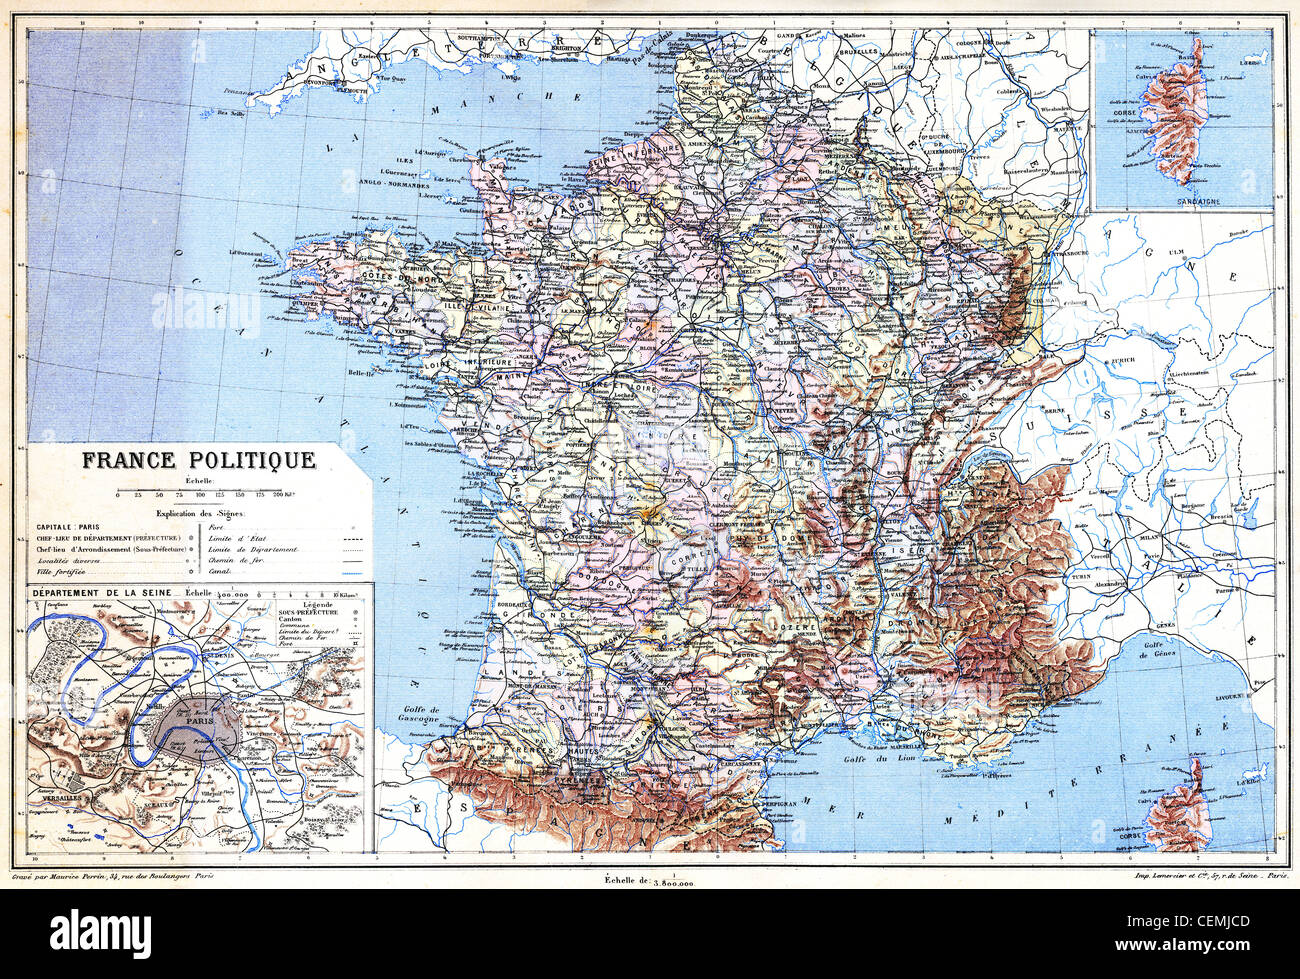 Karte - Frankreich Politique mit Erklärung der Zeichen auf der Karte. Stockfoto